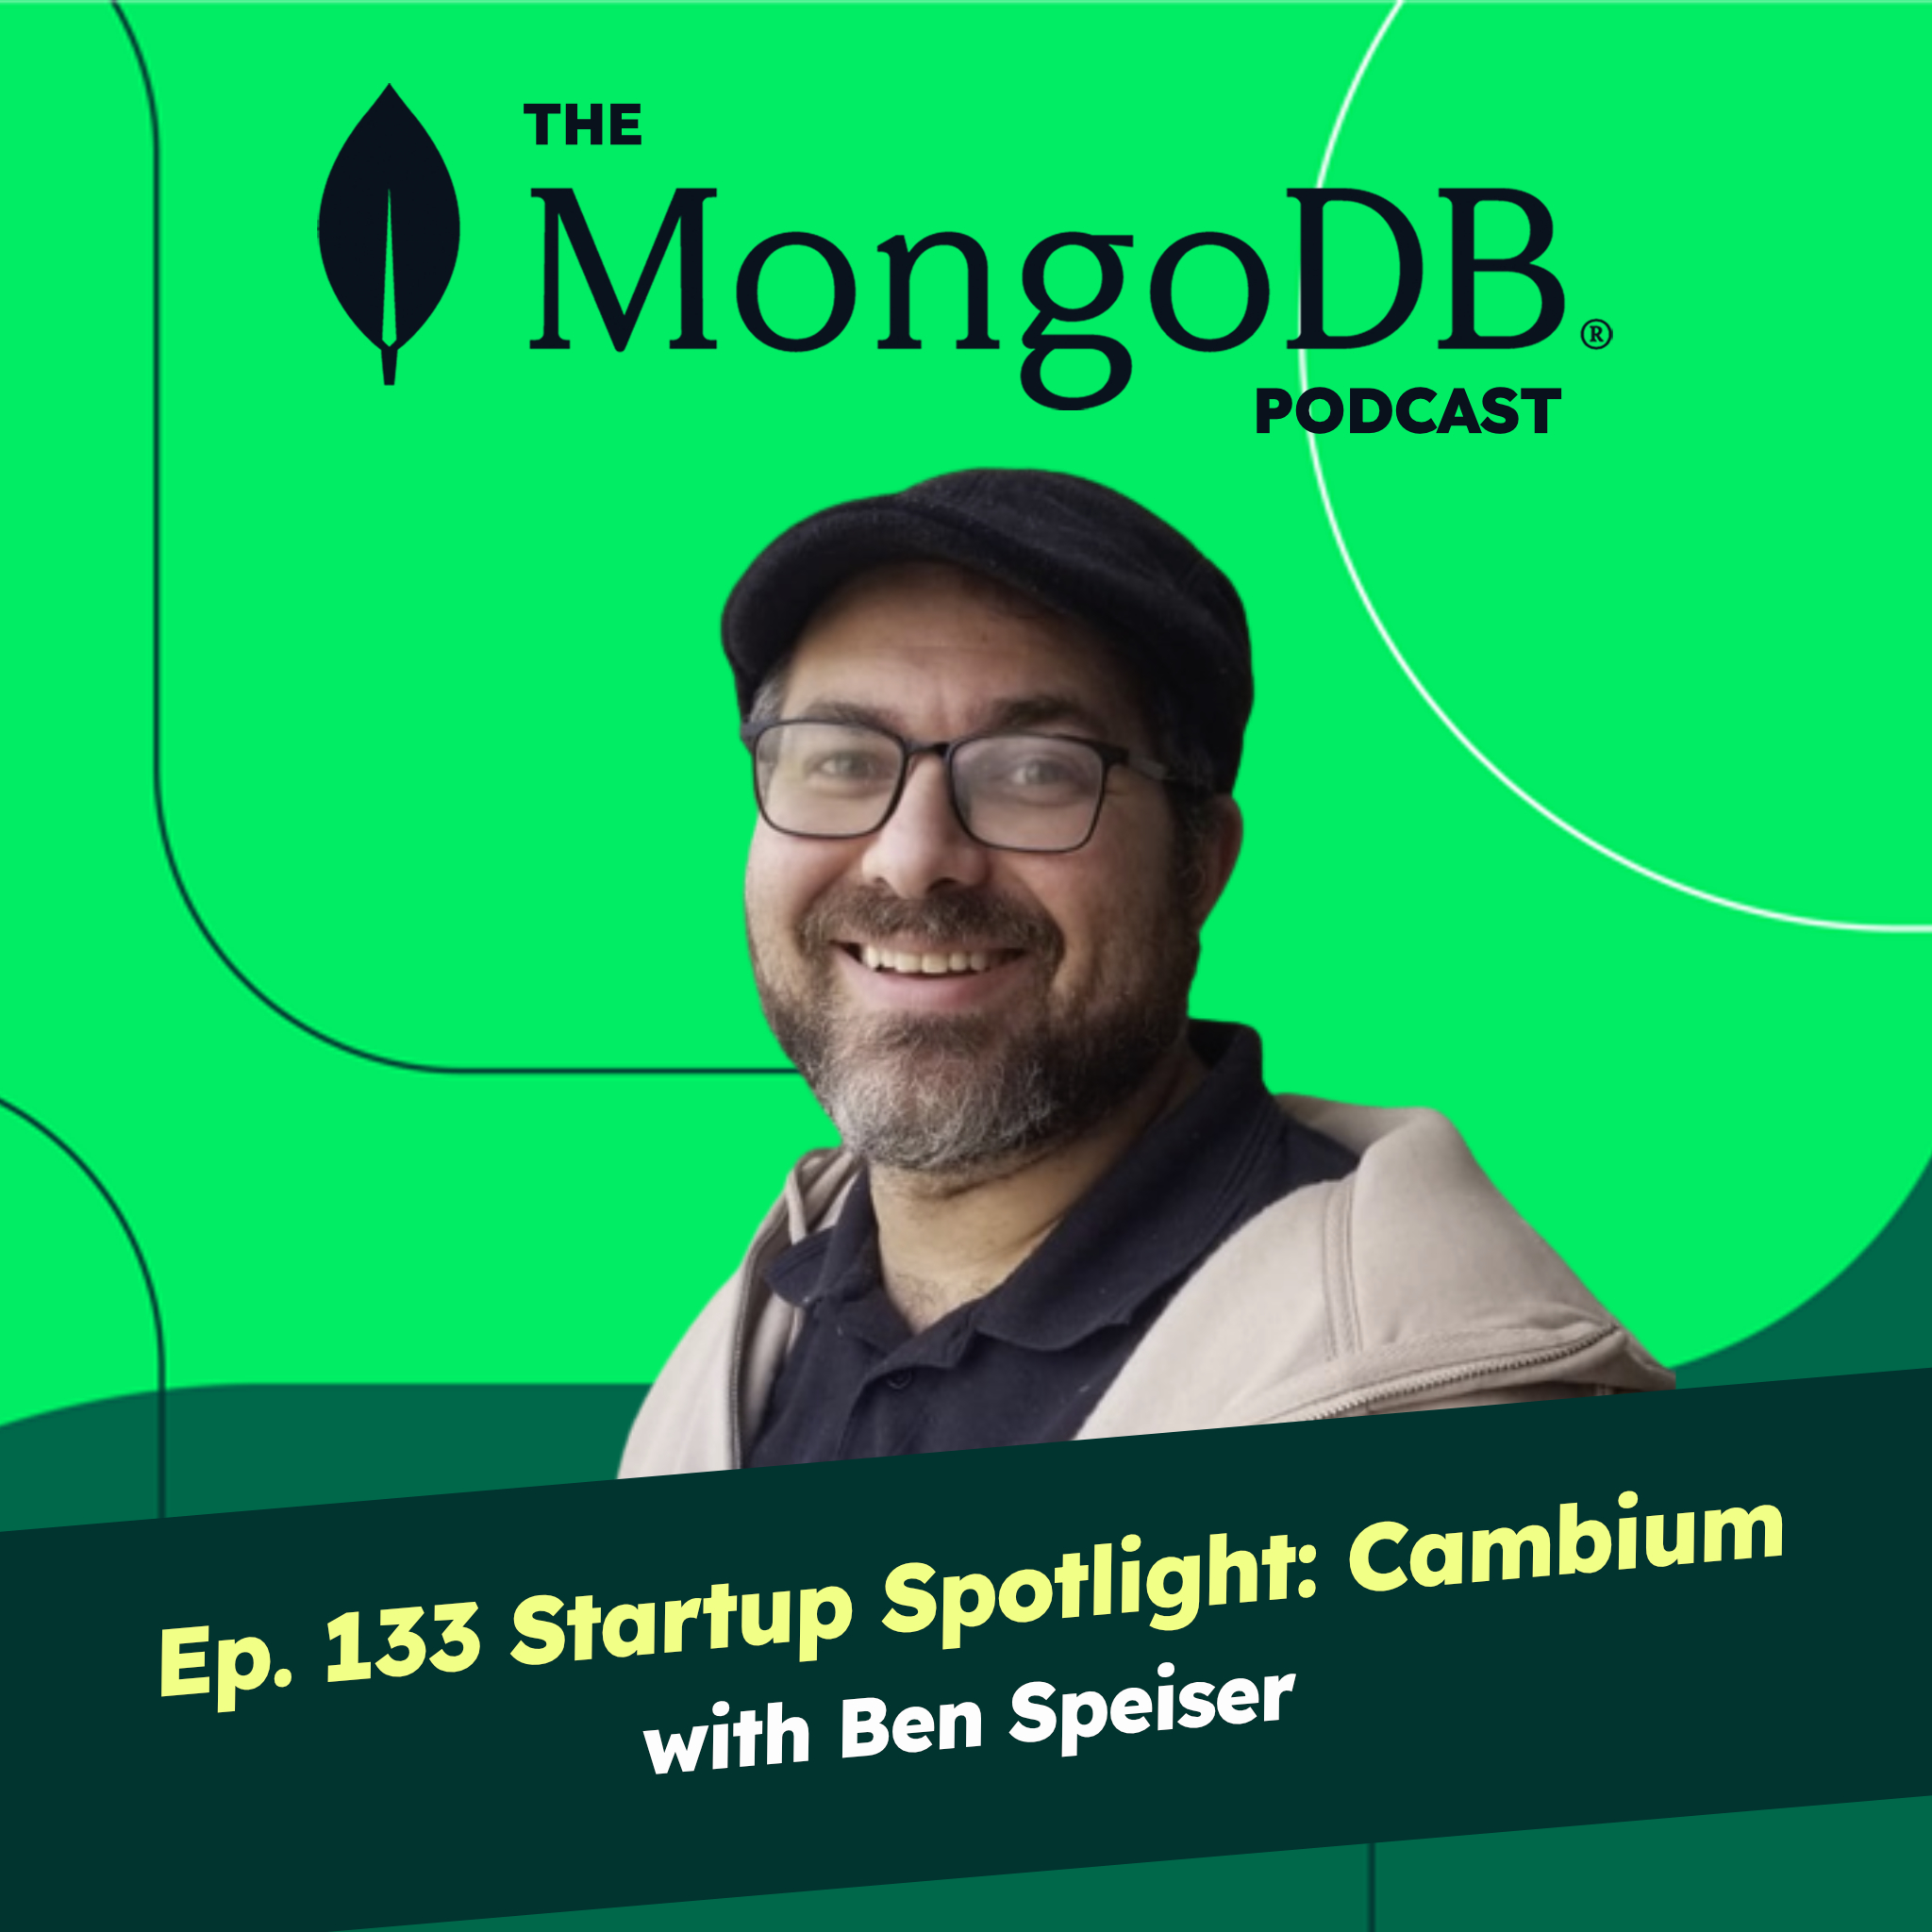 Ep 133 Startup Spotlight: Cambium with Ben Speiser